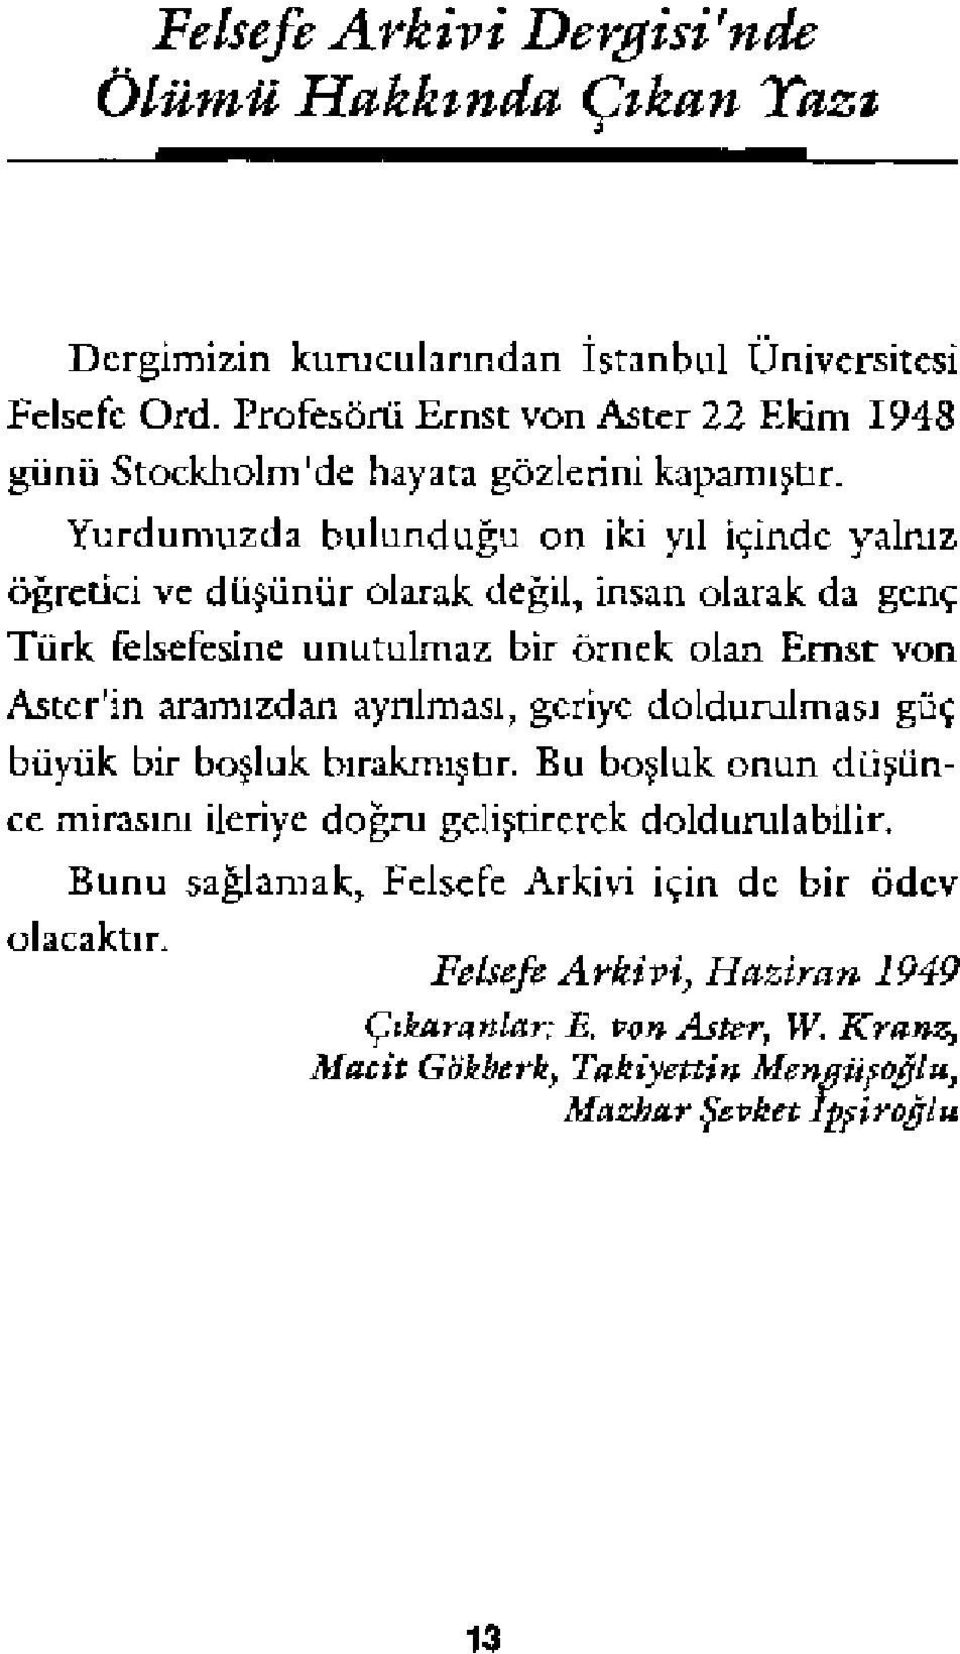 Yurdumuzda bulunduğu on iki yıl İçinde yalmz öğretici vc düşünür olarak değil, İnsan olarak da genç Türk felsefesine unutulmaz bir örnek olan Emsr von Astcr'in aramızdan